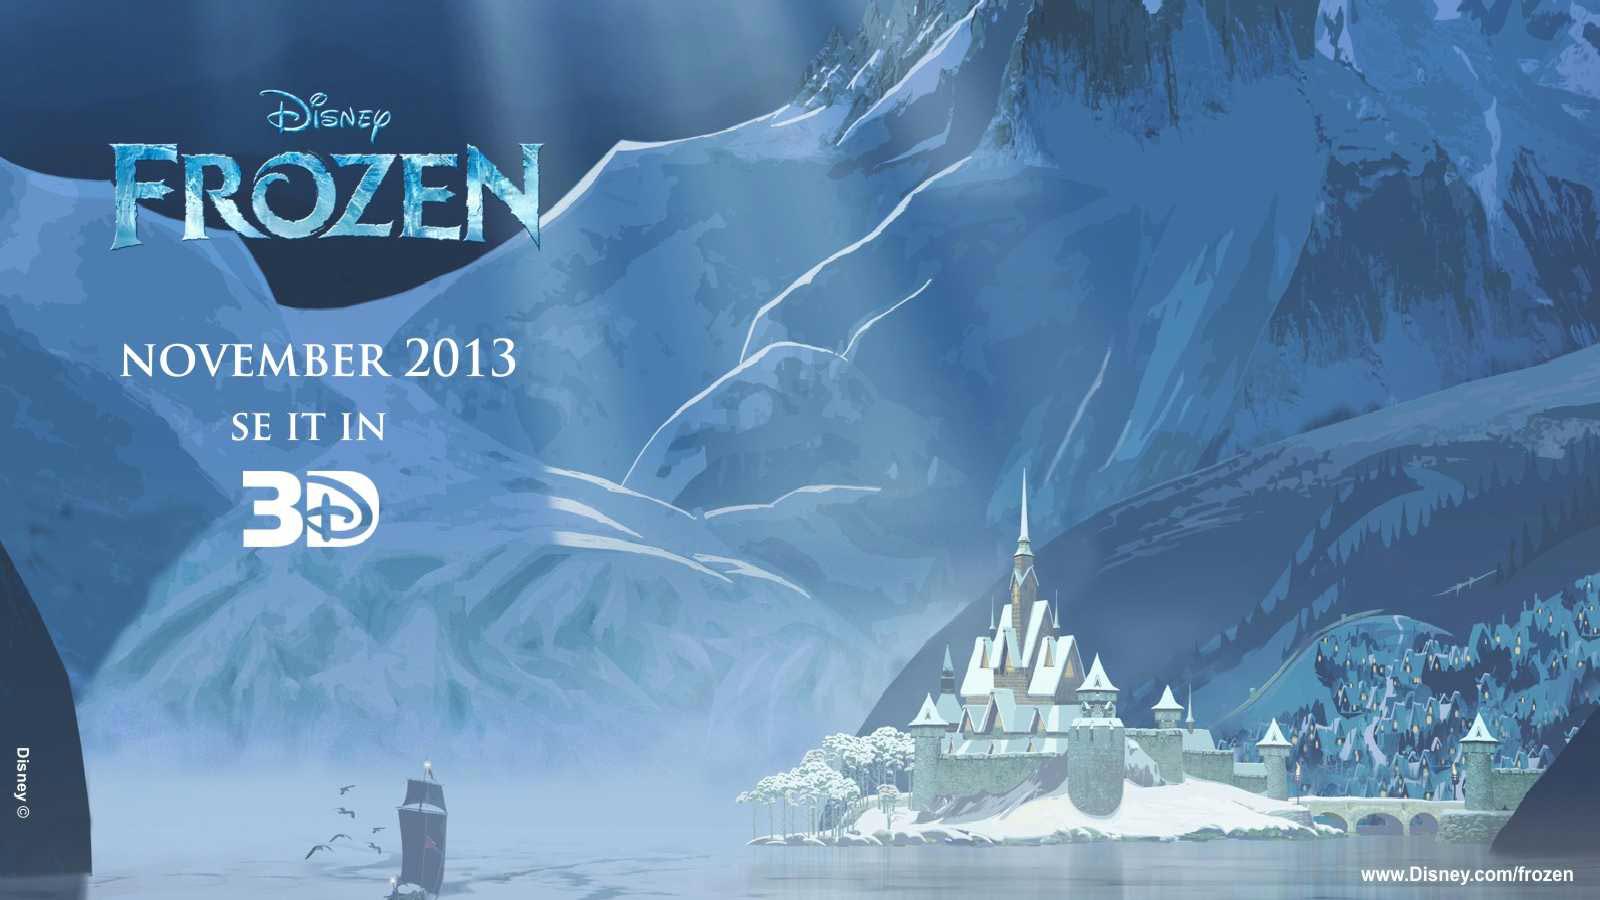 Frozen 3D Disney Cartoons Movies Wallpaper Download 1600x900